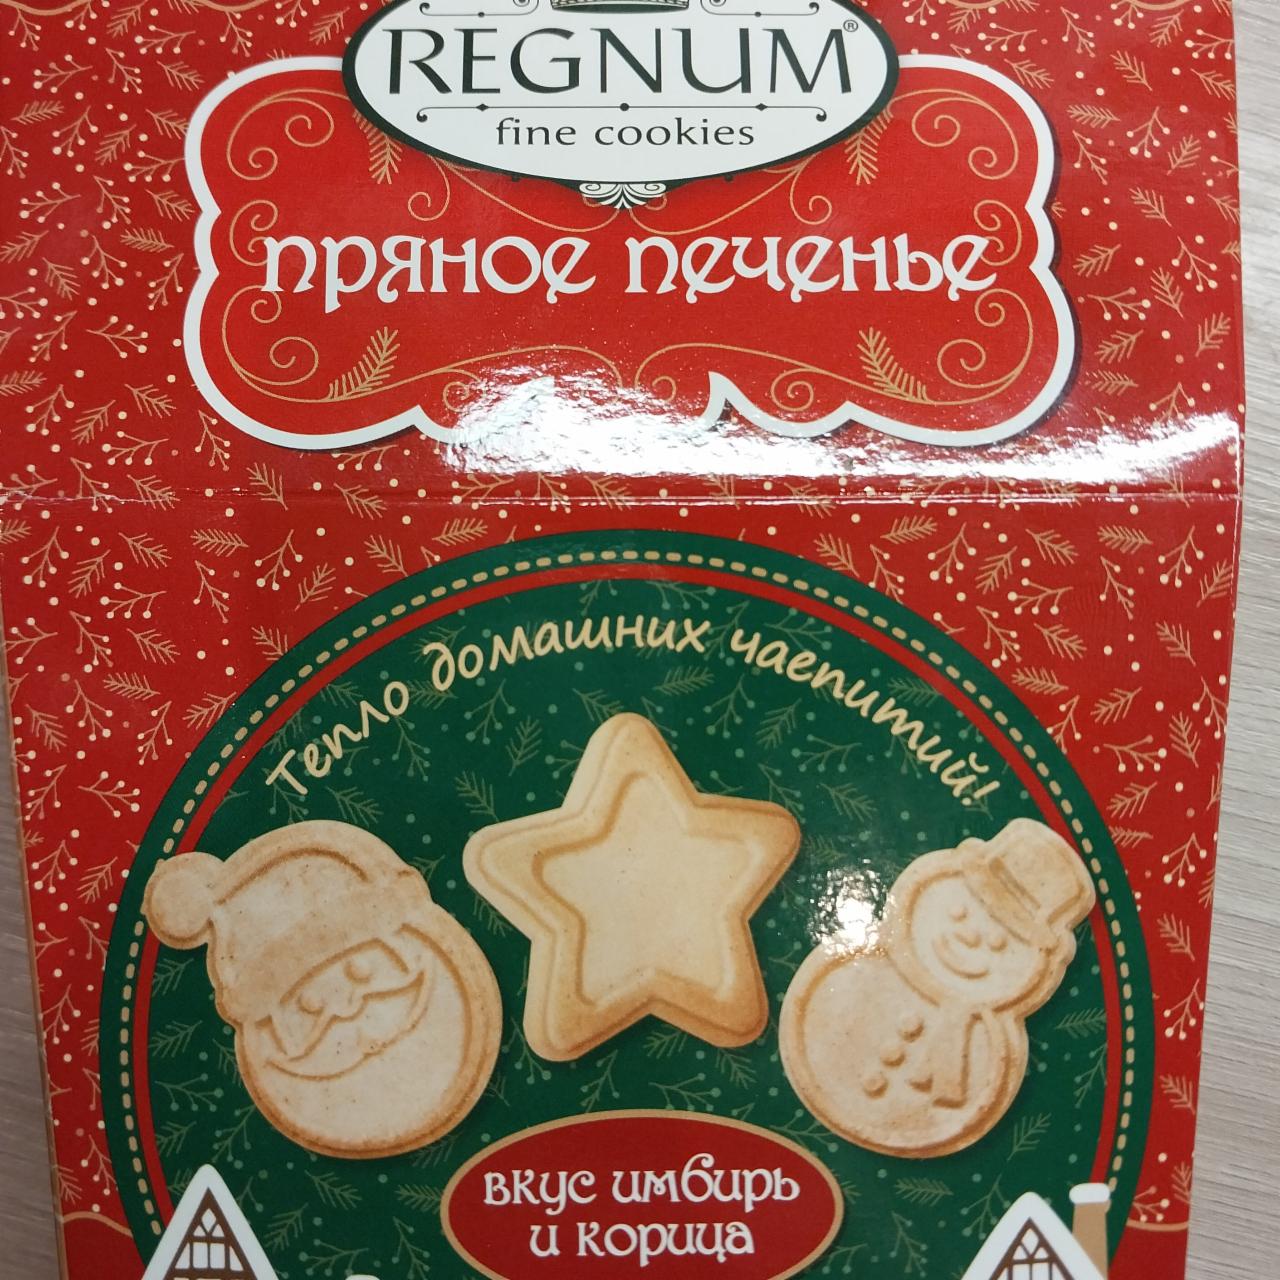 Фото - Печенье сахарное пряное с имбирем и корицей Regnum